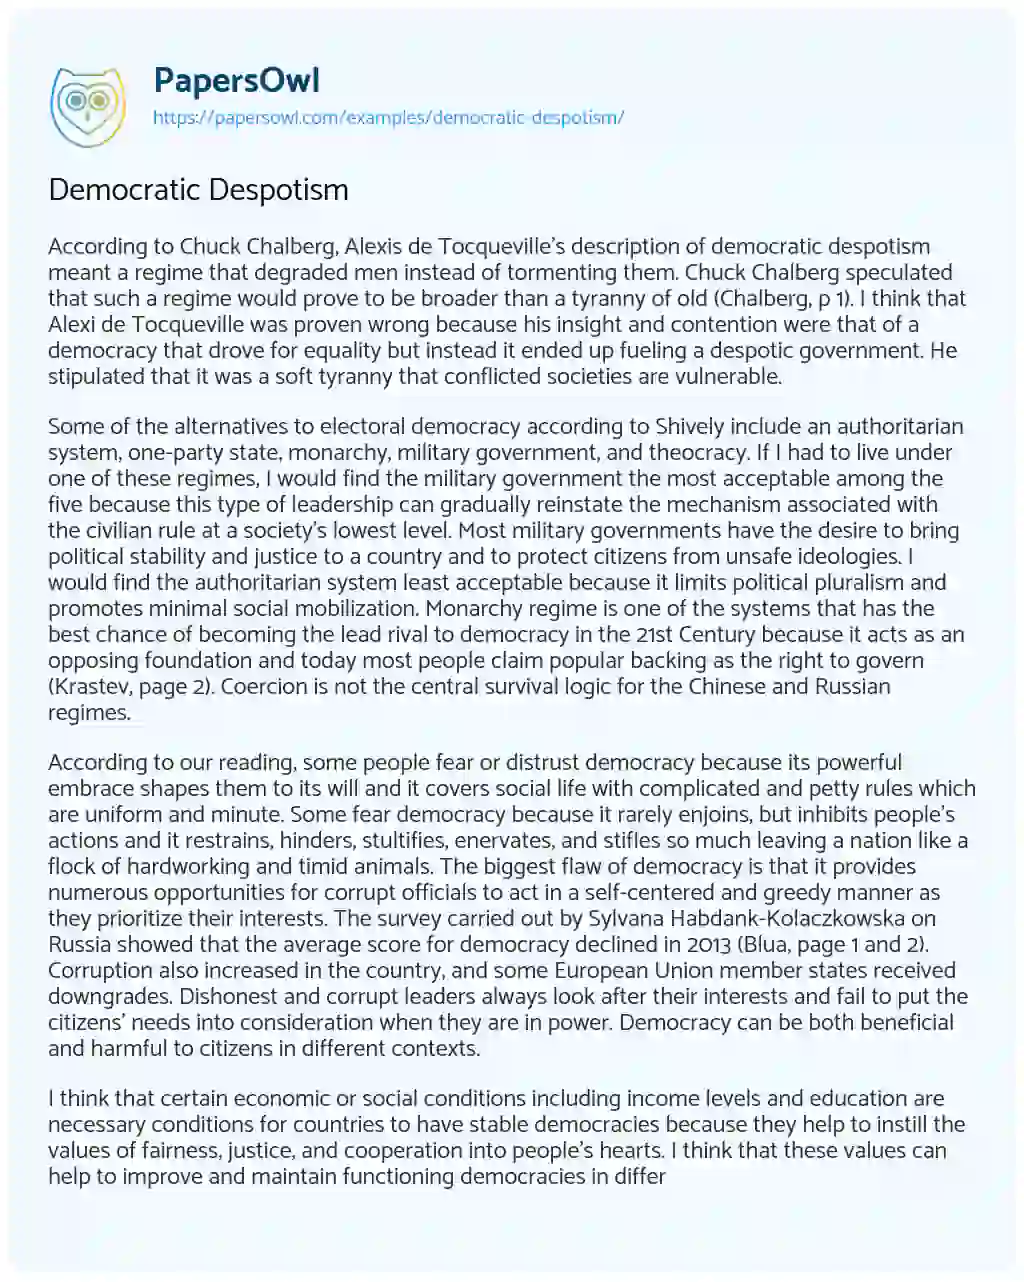 Democratic Despotism essay